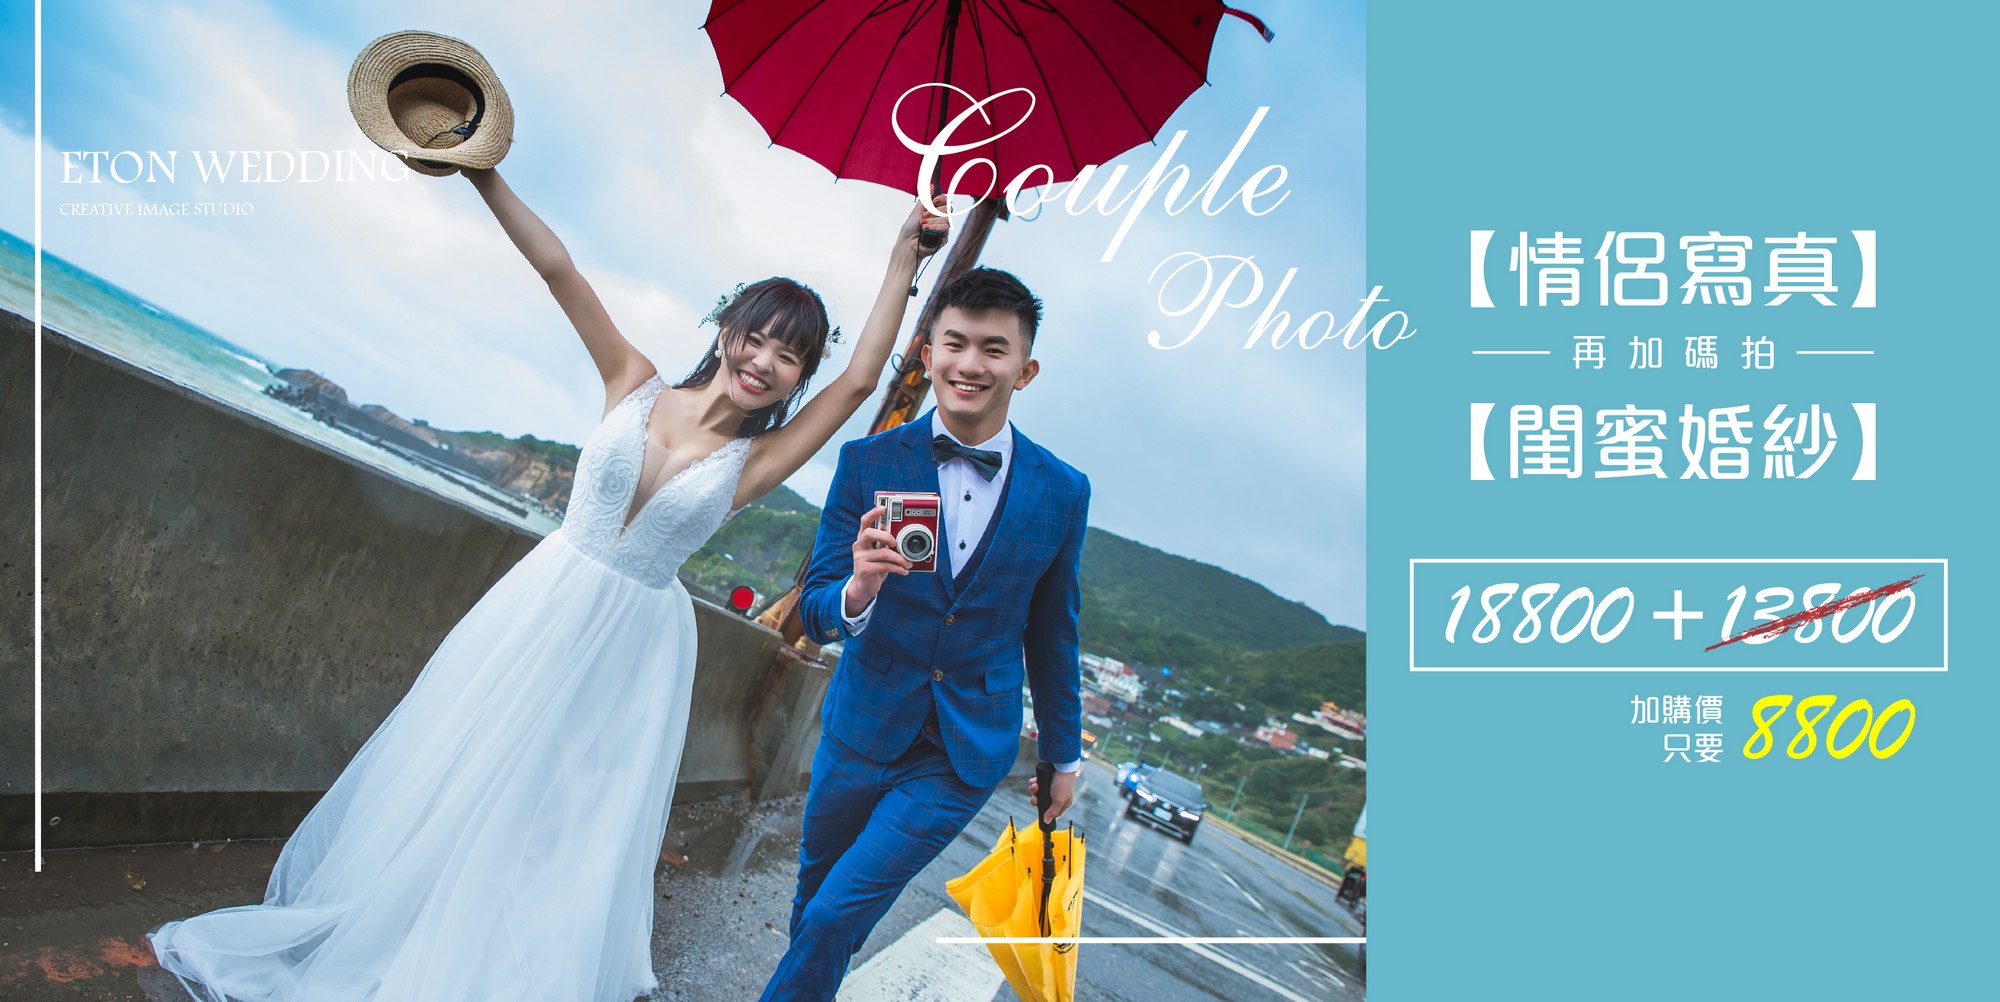 台北 情侶寫真,台北拍情侶照,台北 情侶攝影,台北 情侶寫真價格